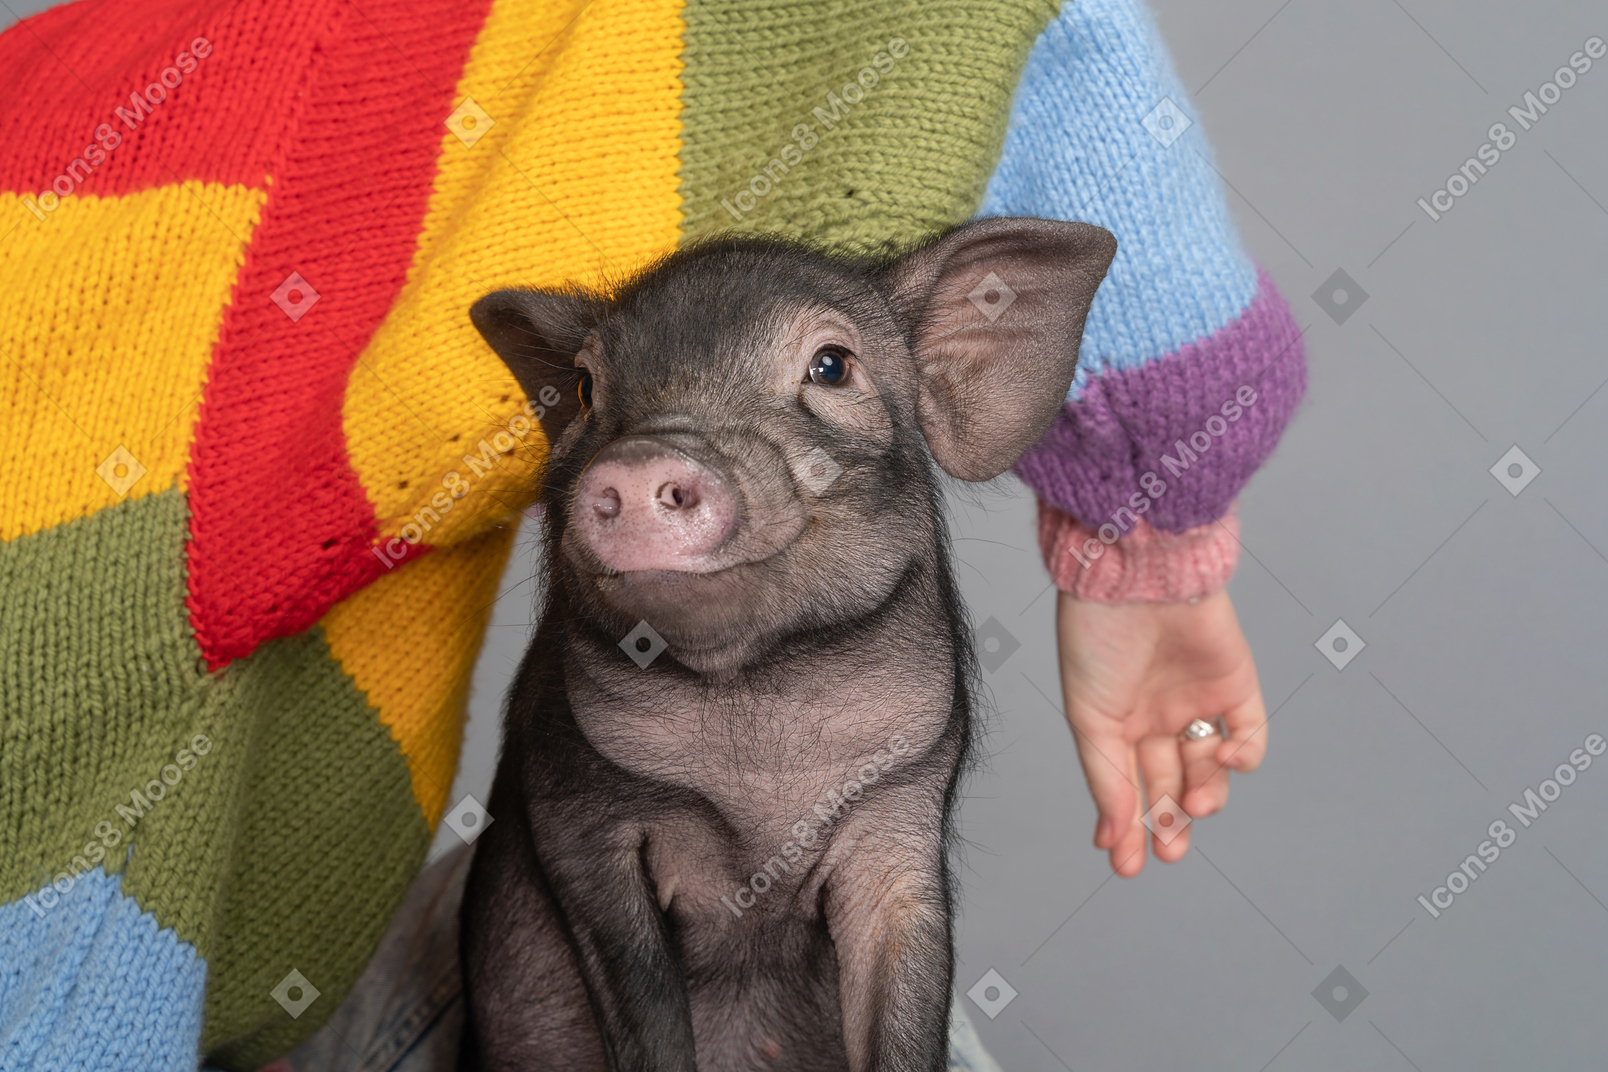 Uma mulher vestindo um suéter colorido sentada ao lado de um porquinho fofo